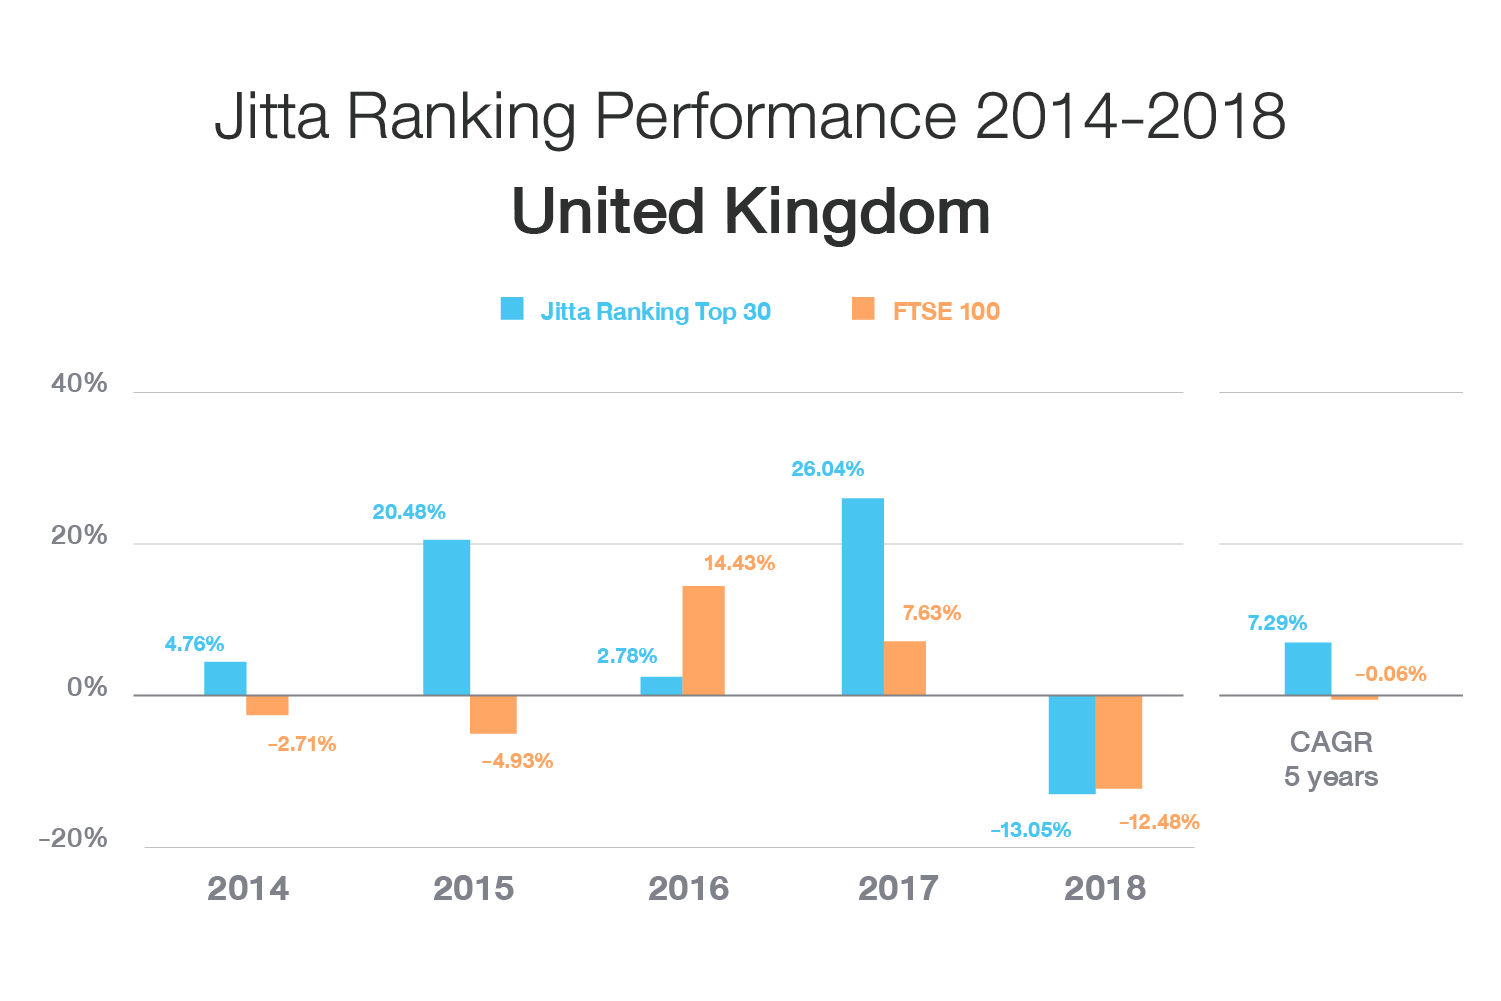 Jitta Ranking U.K.: 5-Year Average Returns (2014-2018)